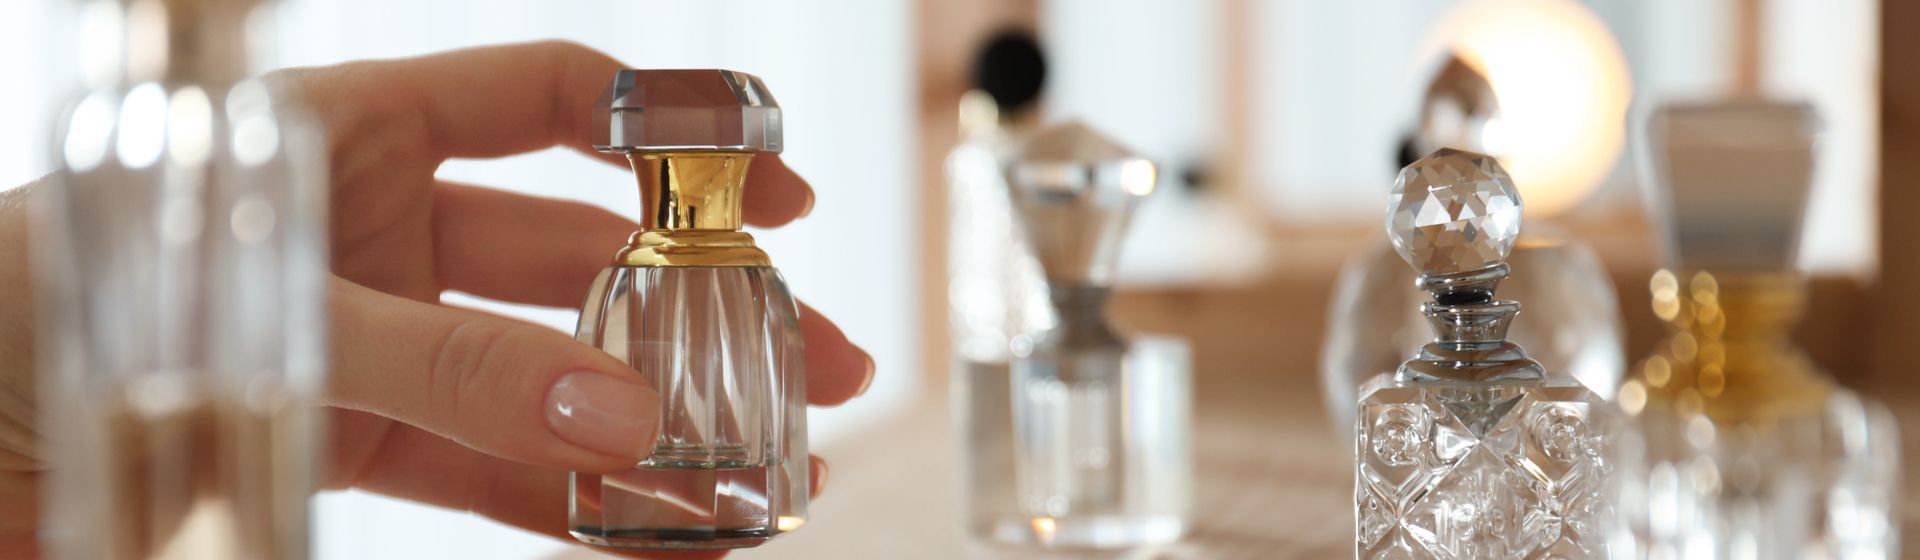 Perfumes importados mais vendidos: veja os mais populares no Buscapé